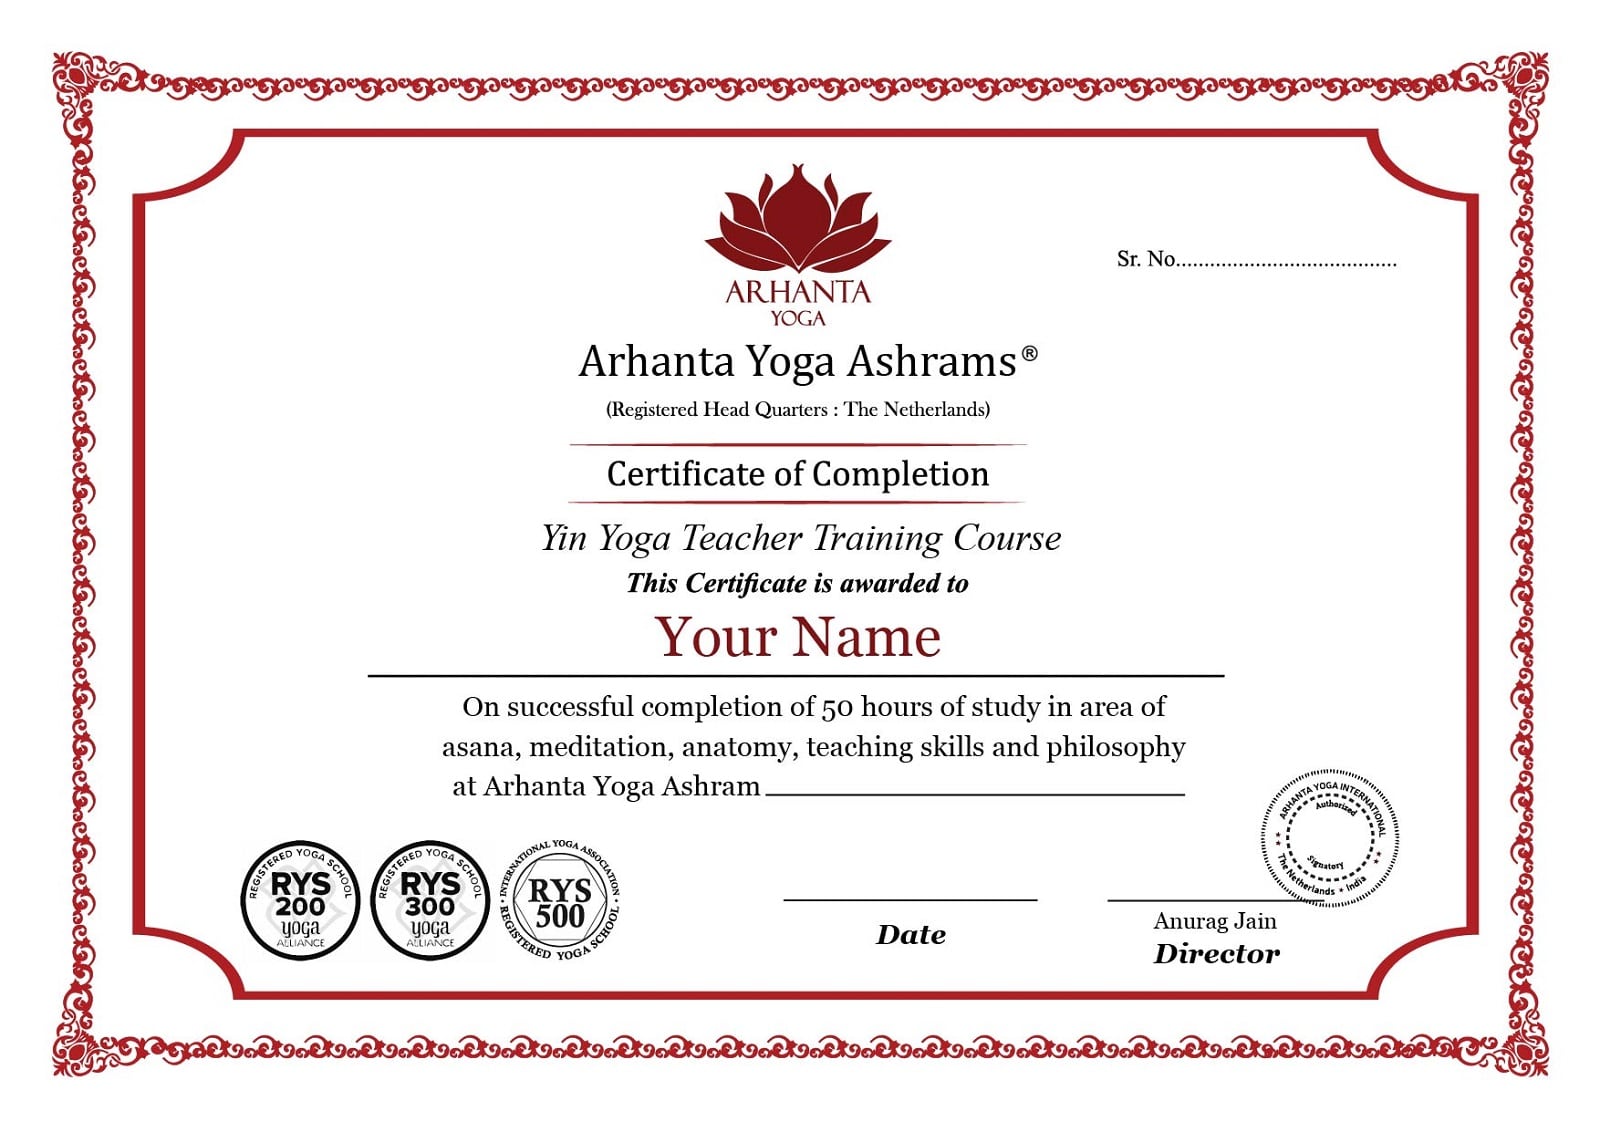 Certificat de formation de professeur de yin yoga de 50 heures